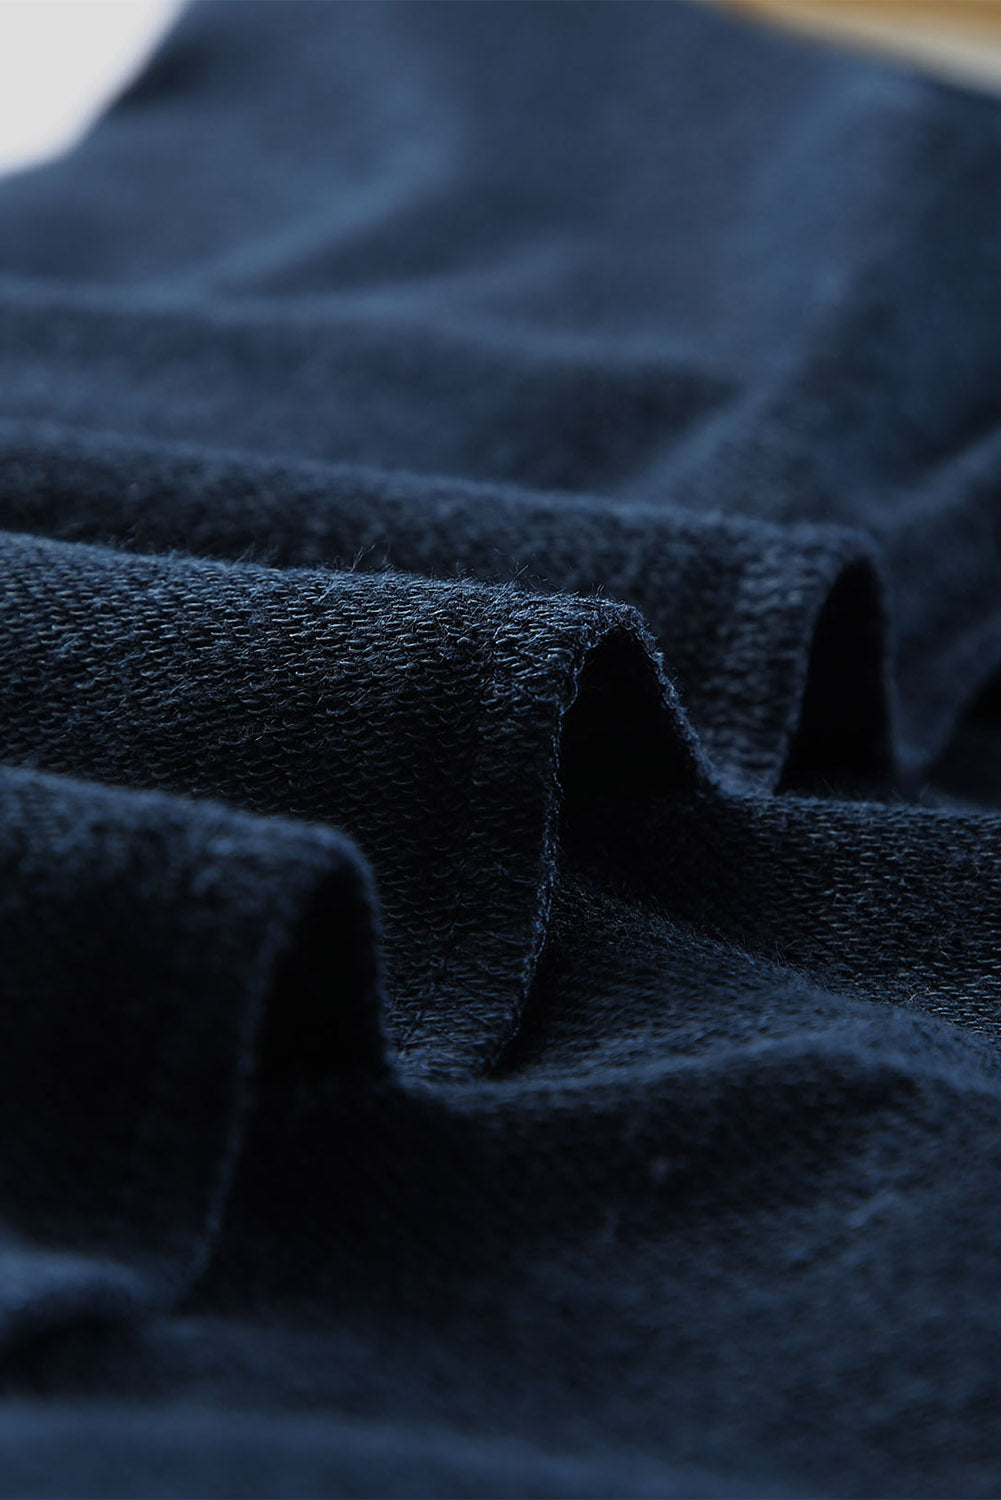 Dark Blue Oversized Solid Drop Shoulder Sweatshirt